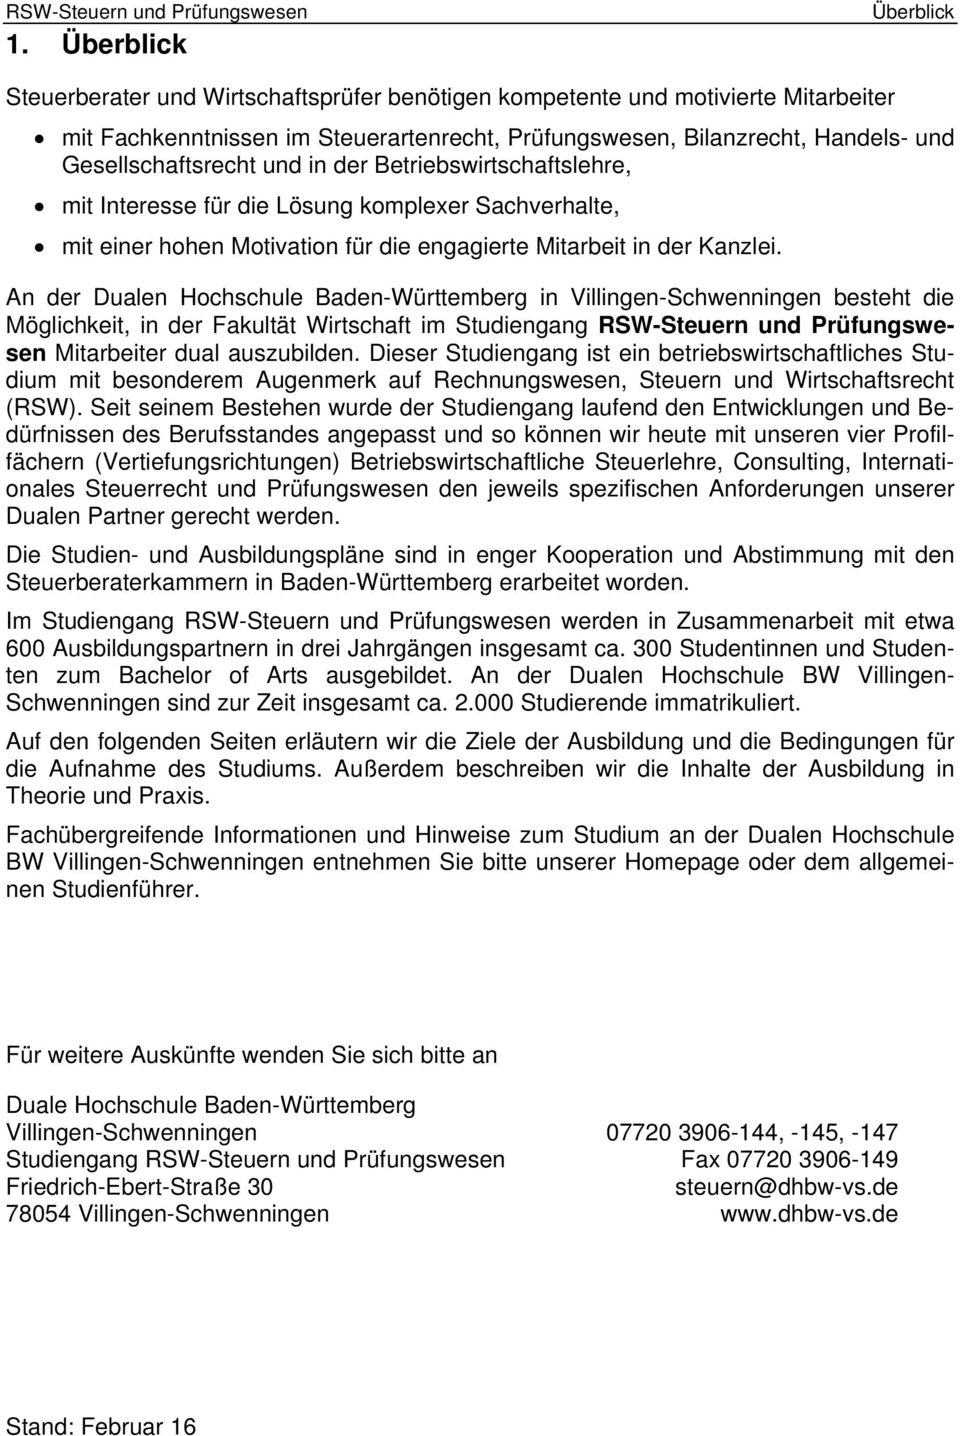 An der Dualen Hochschule Baden-Württemberg in Villingen-Schwenningen besteht die Möglichkeit, in der Fakultät Wirtschaft im Studiengang RSW-Steuern und Prüfungswesen Mitarbeiter dual auszubilden.